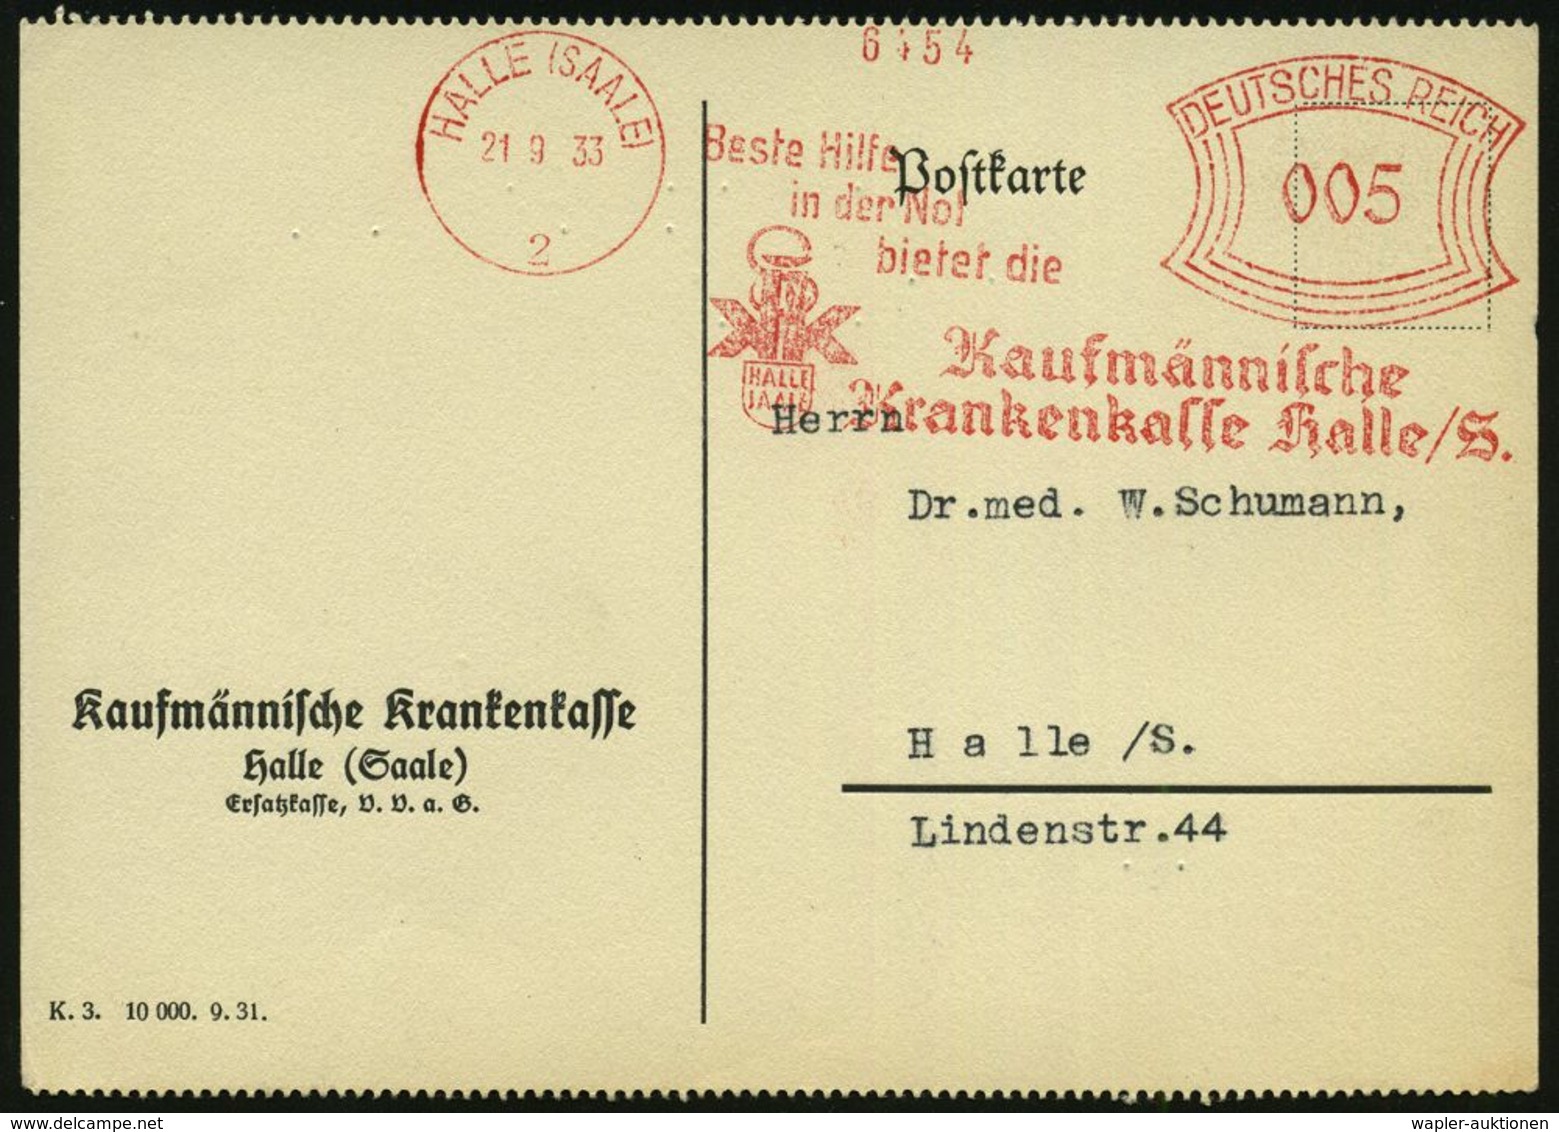 KRANKENKASSE / KRANKEN-VERSICHERUNG : HALLE (SAALE)/ 2/ Beste Hilfe/ In Der Not../ Kaufmännische/ Krankenkasse.. 1933 (2 - Medizin